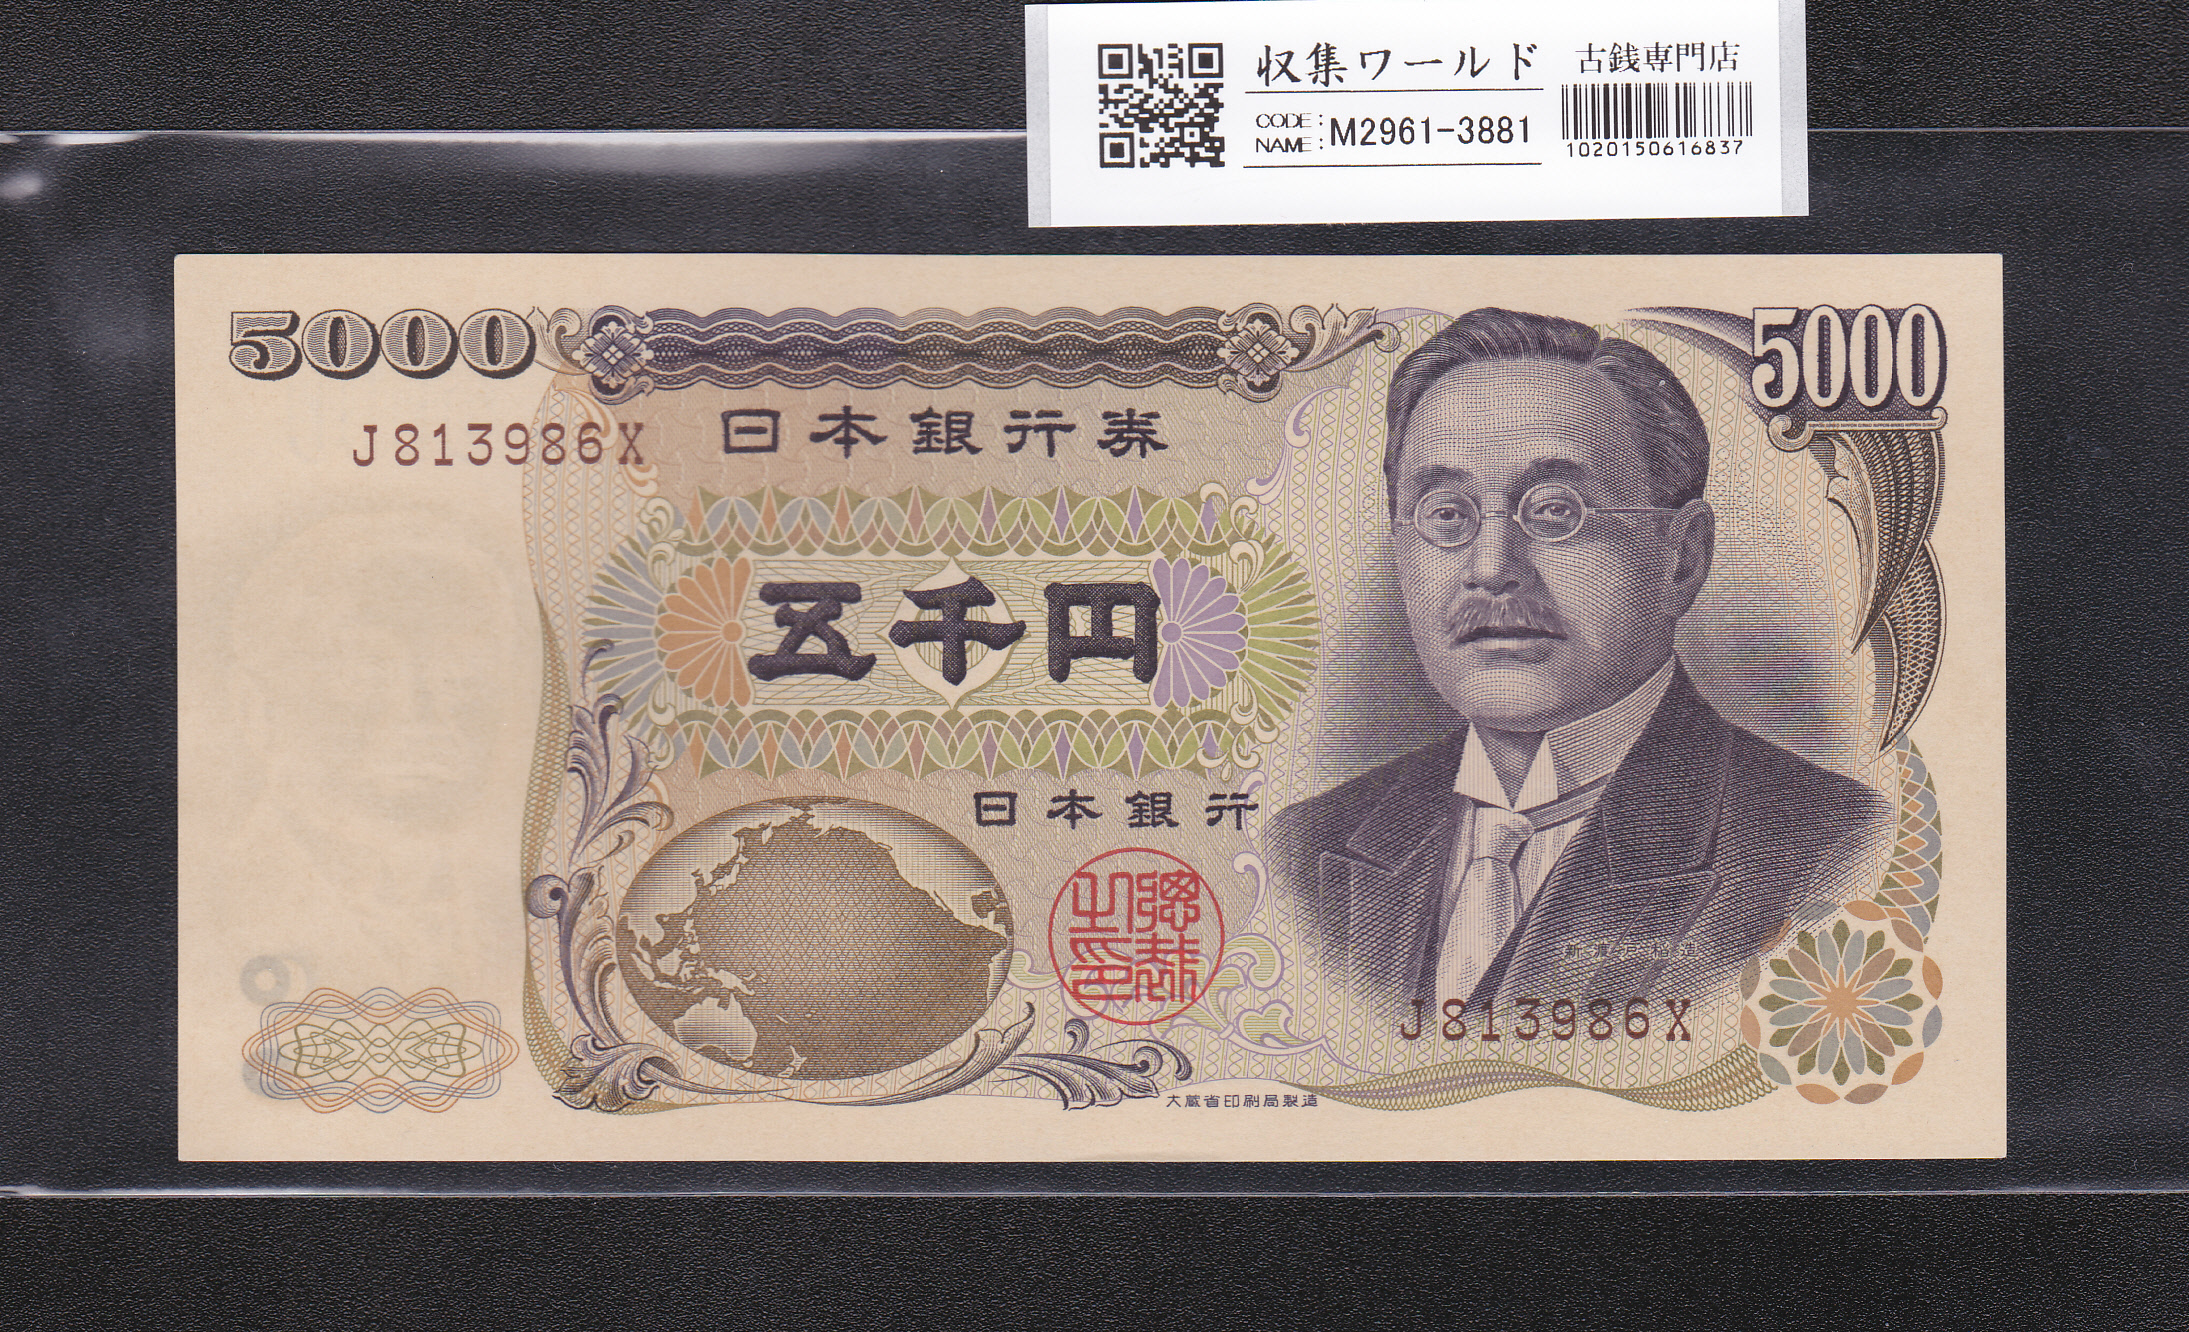 新渡戸 5000円紙幣 大蔵省印刷局銘版 褐色 1桁 J813986X 未使用